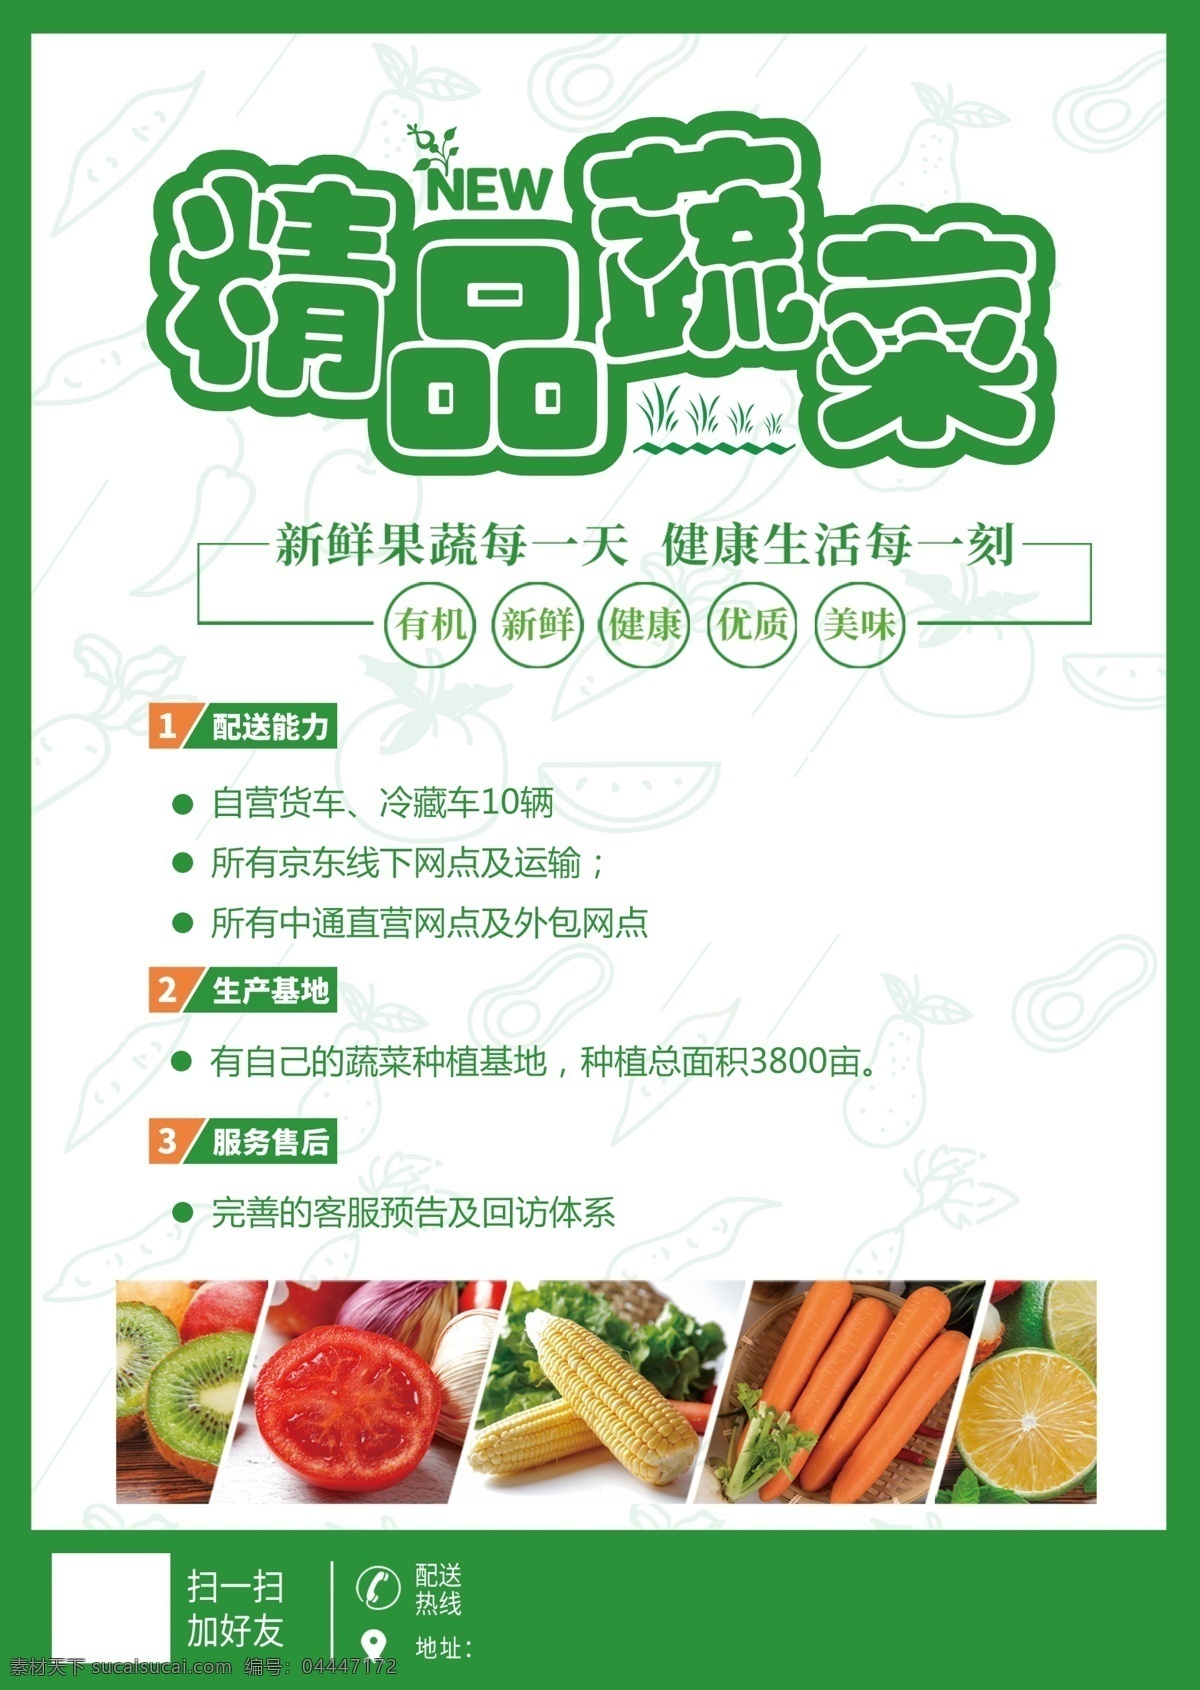 精品蔬菜 绿色 水果 蔬菜 有机 配送 新鲜 海报 简约 时尚 精致 天然 健康 广告 展架